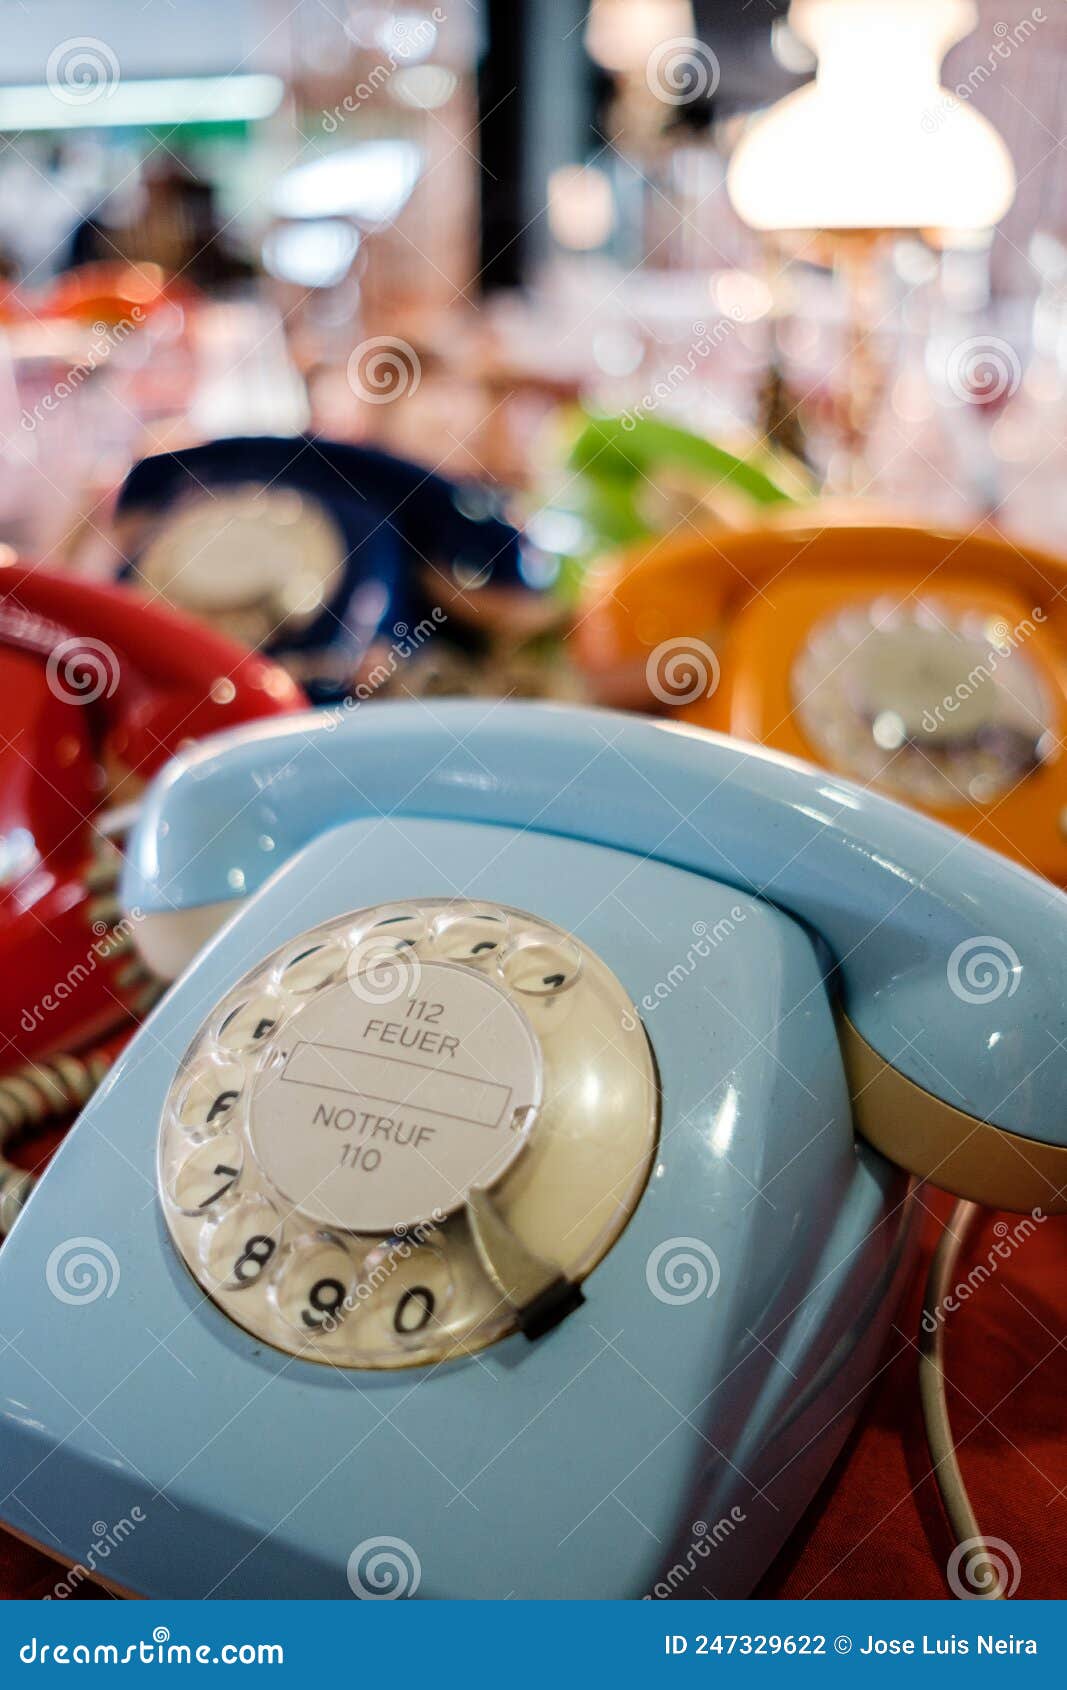 old analogic telephones